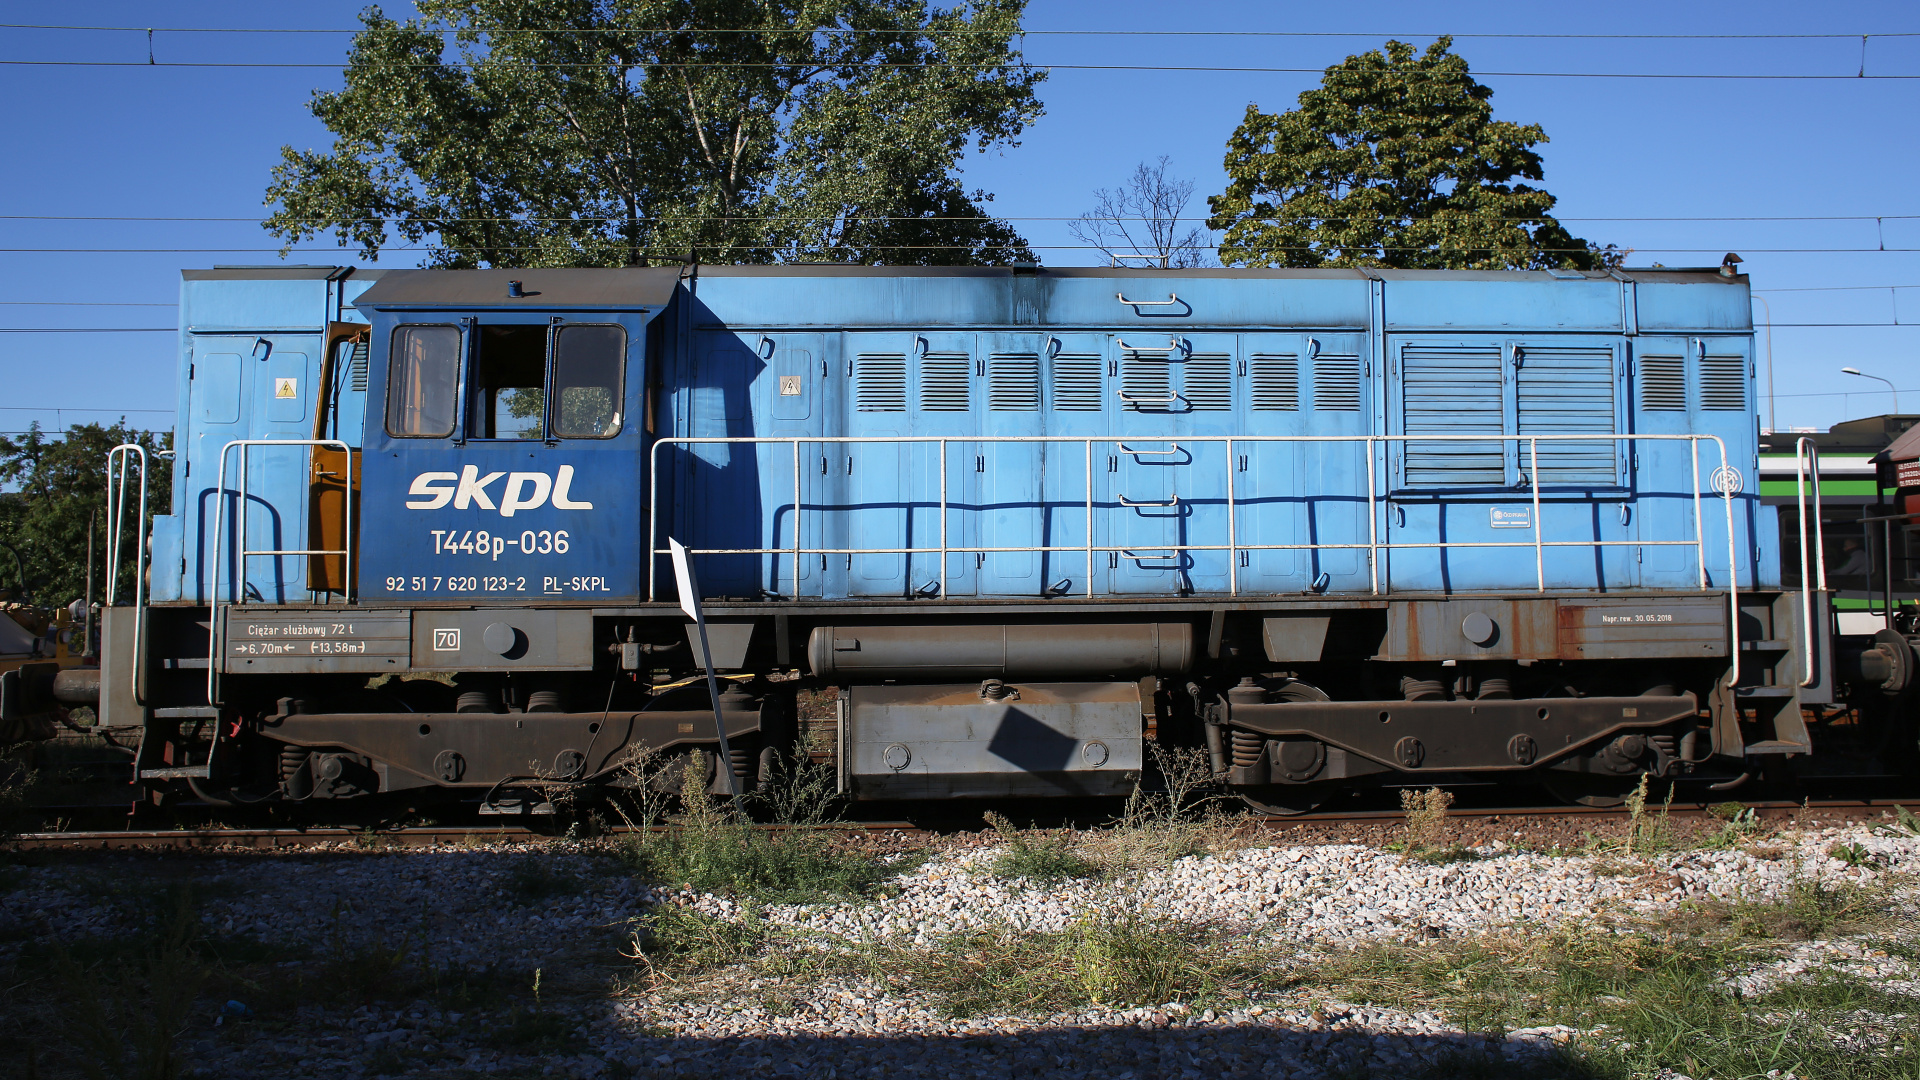 ČKD T448p-036 (Pojazdy » Pociągi i lokomotywy)